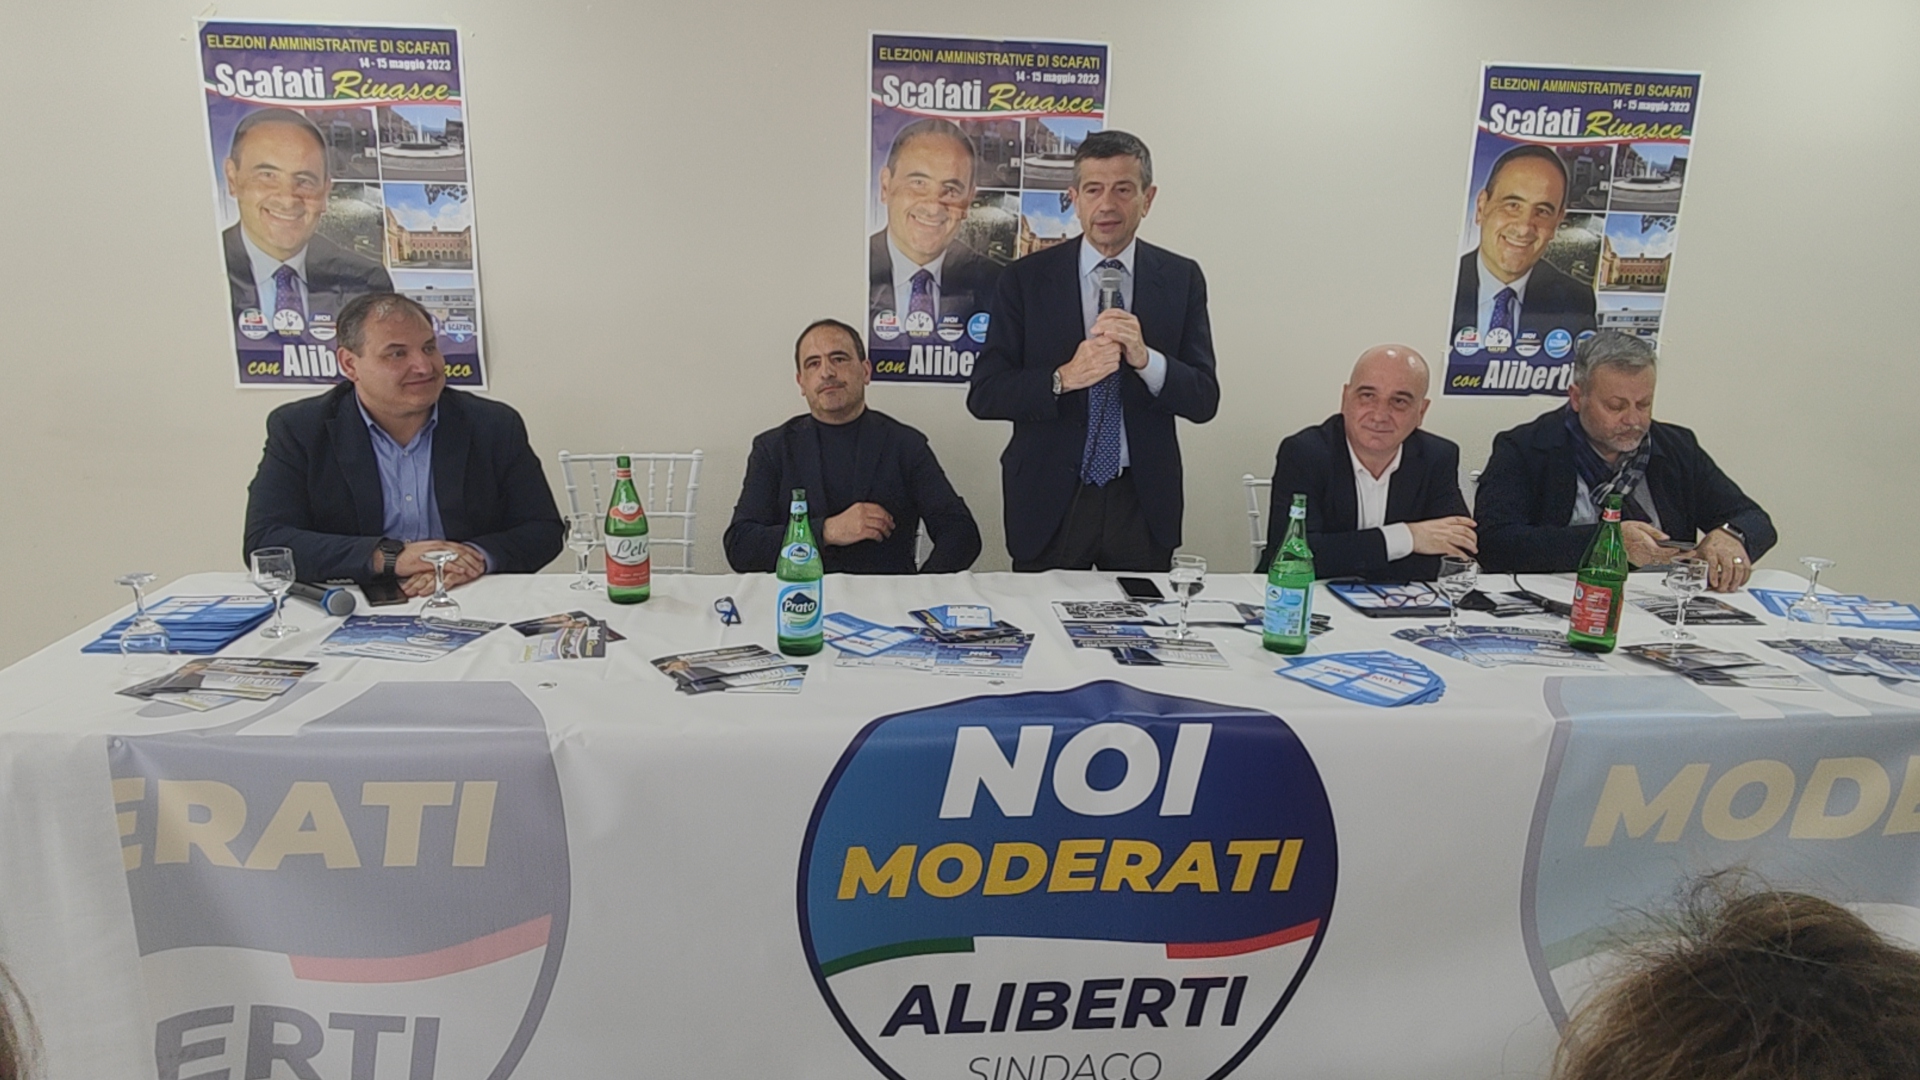 Amministrative, Maurizio Lupi a Scafati: “Noi moderati è presente con Aliberti e continuerà a costruire una proposta politica che sia il nuovo pilastro del centrodestra”